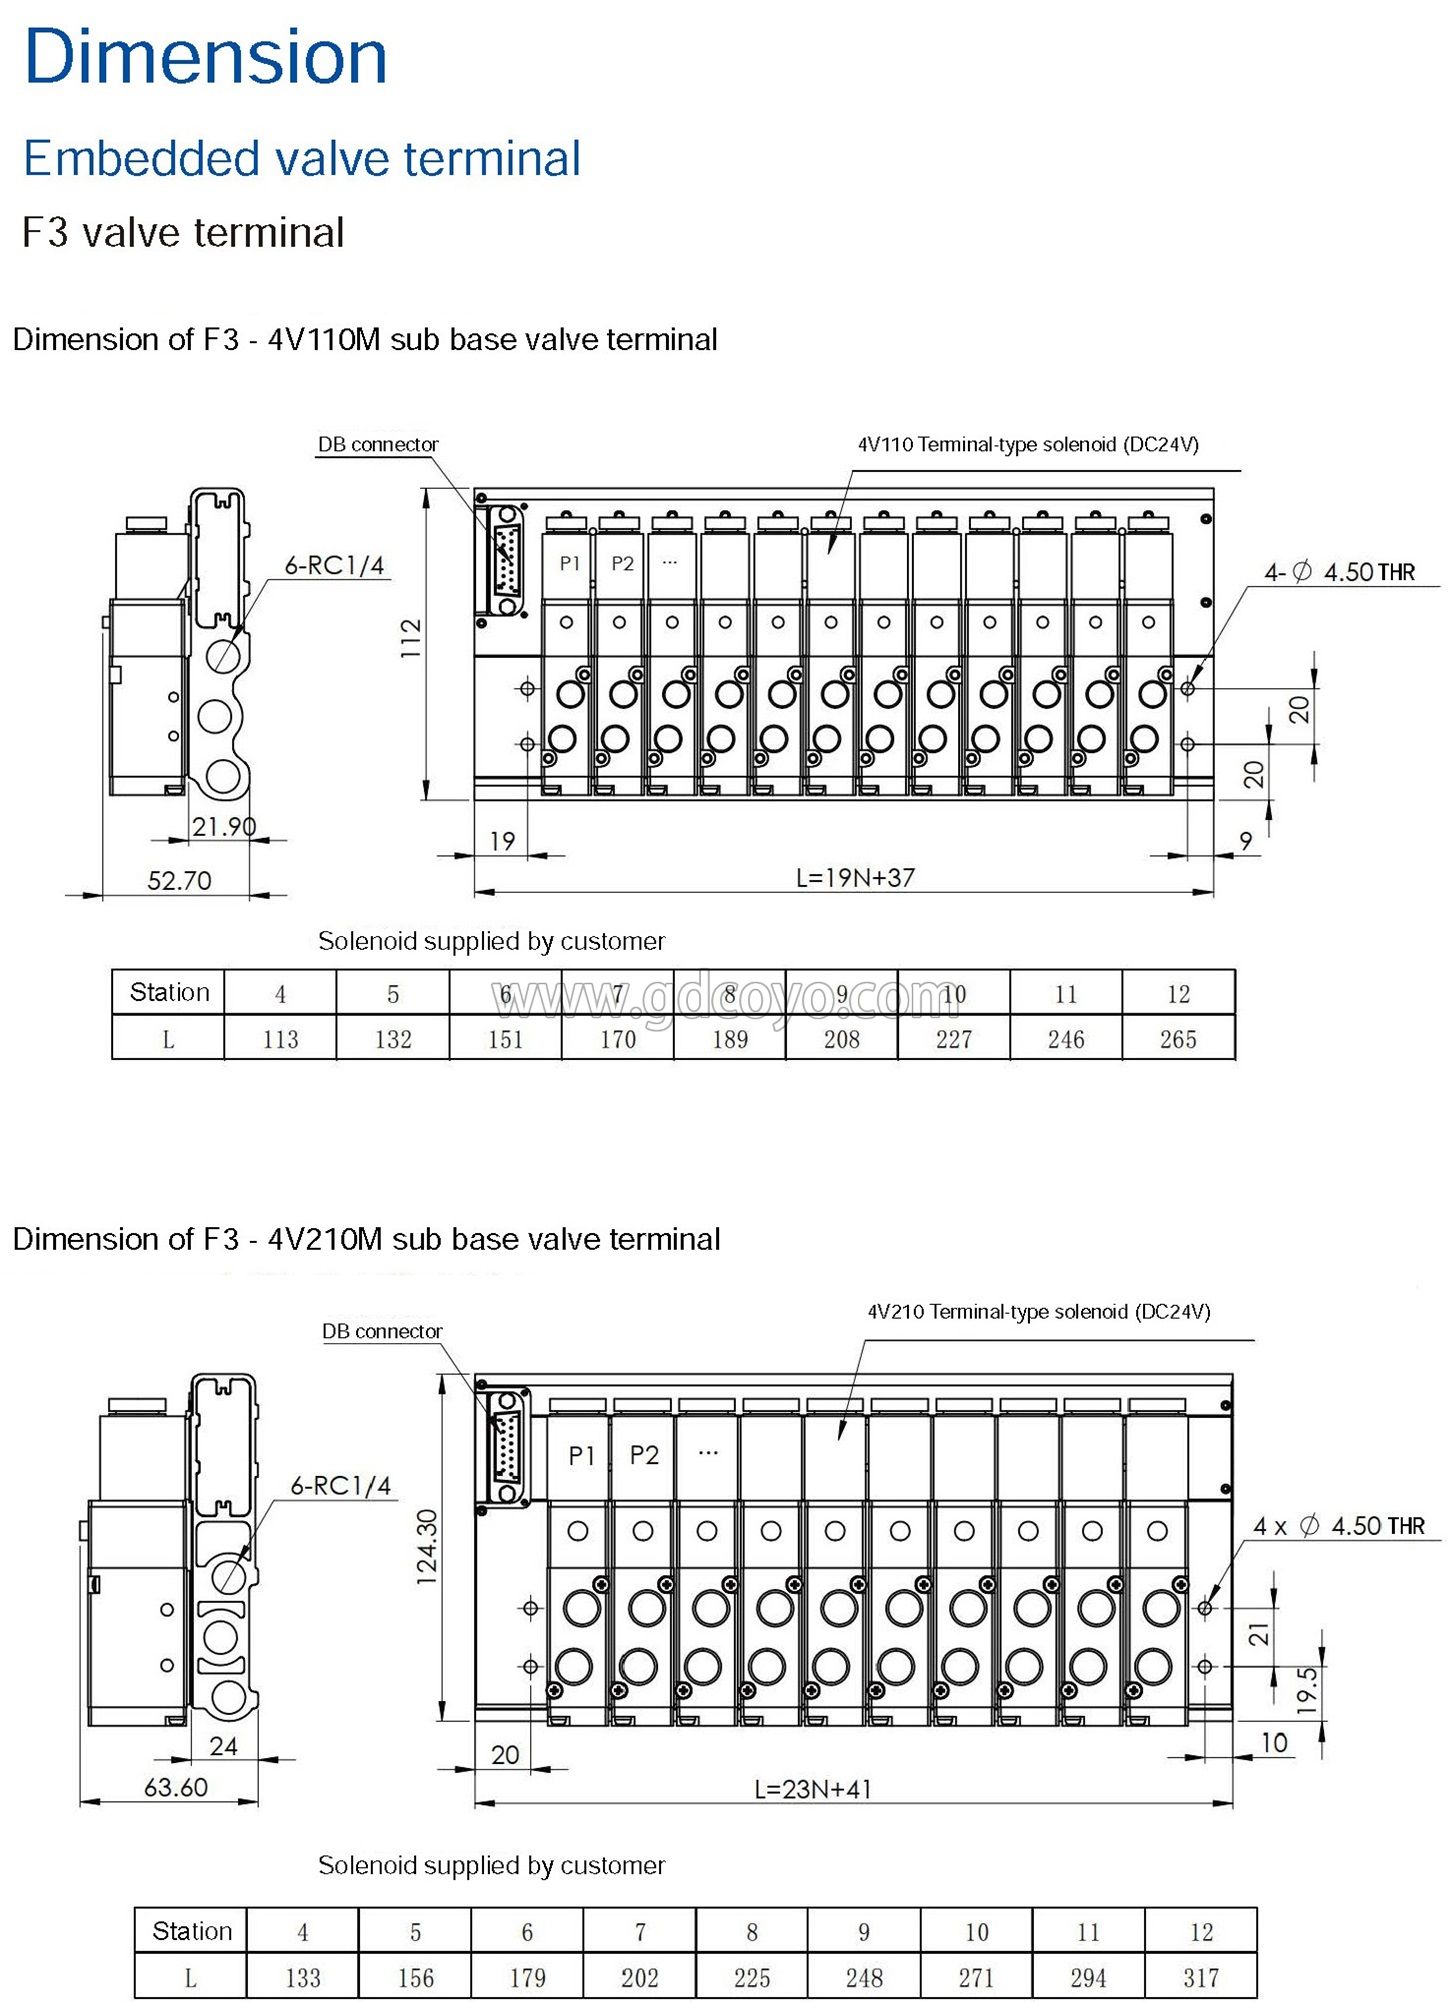 F3-4V210M Multi-Pin Plug Valve Terminal